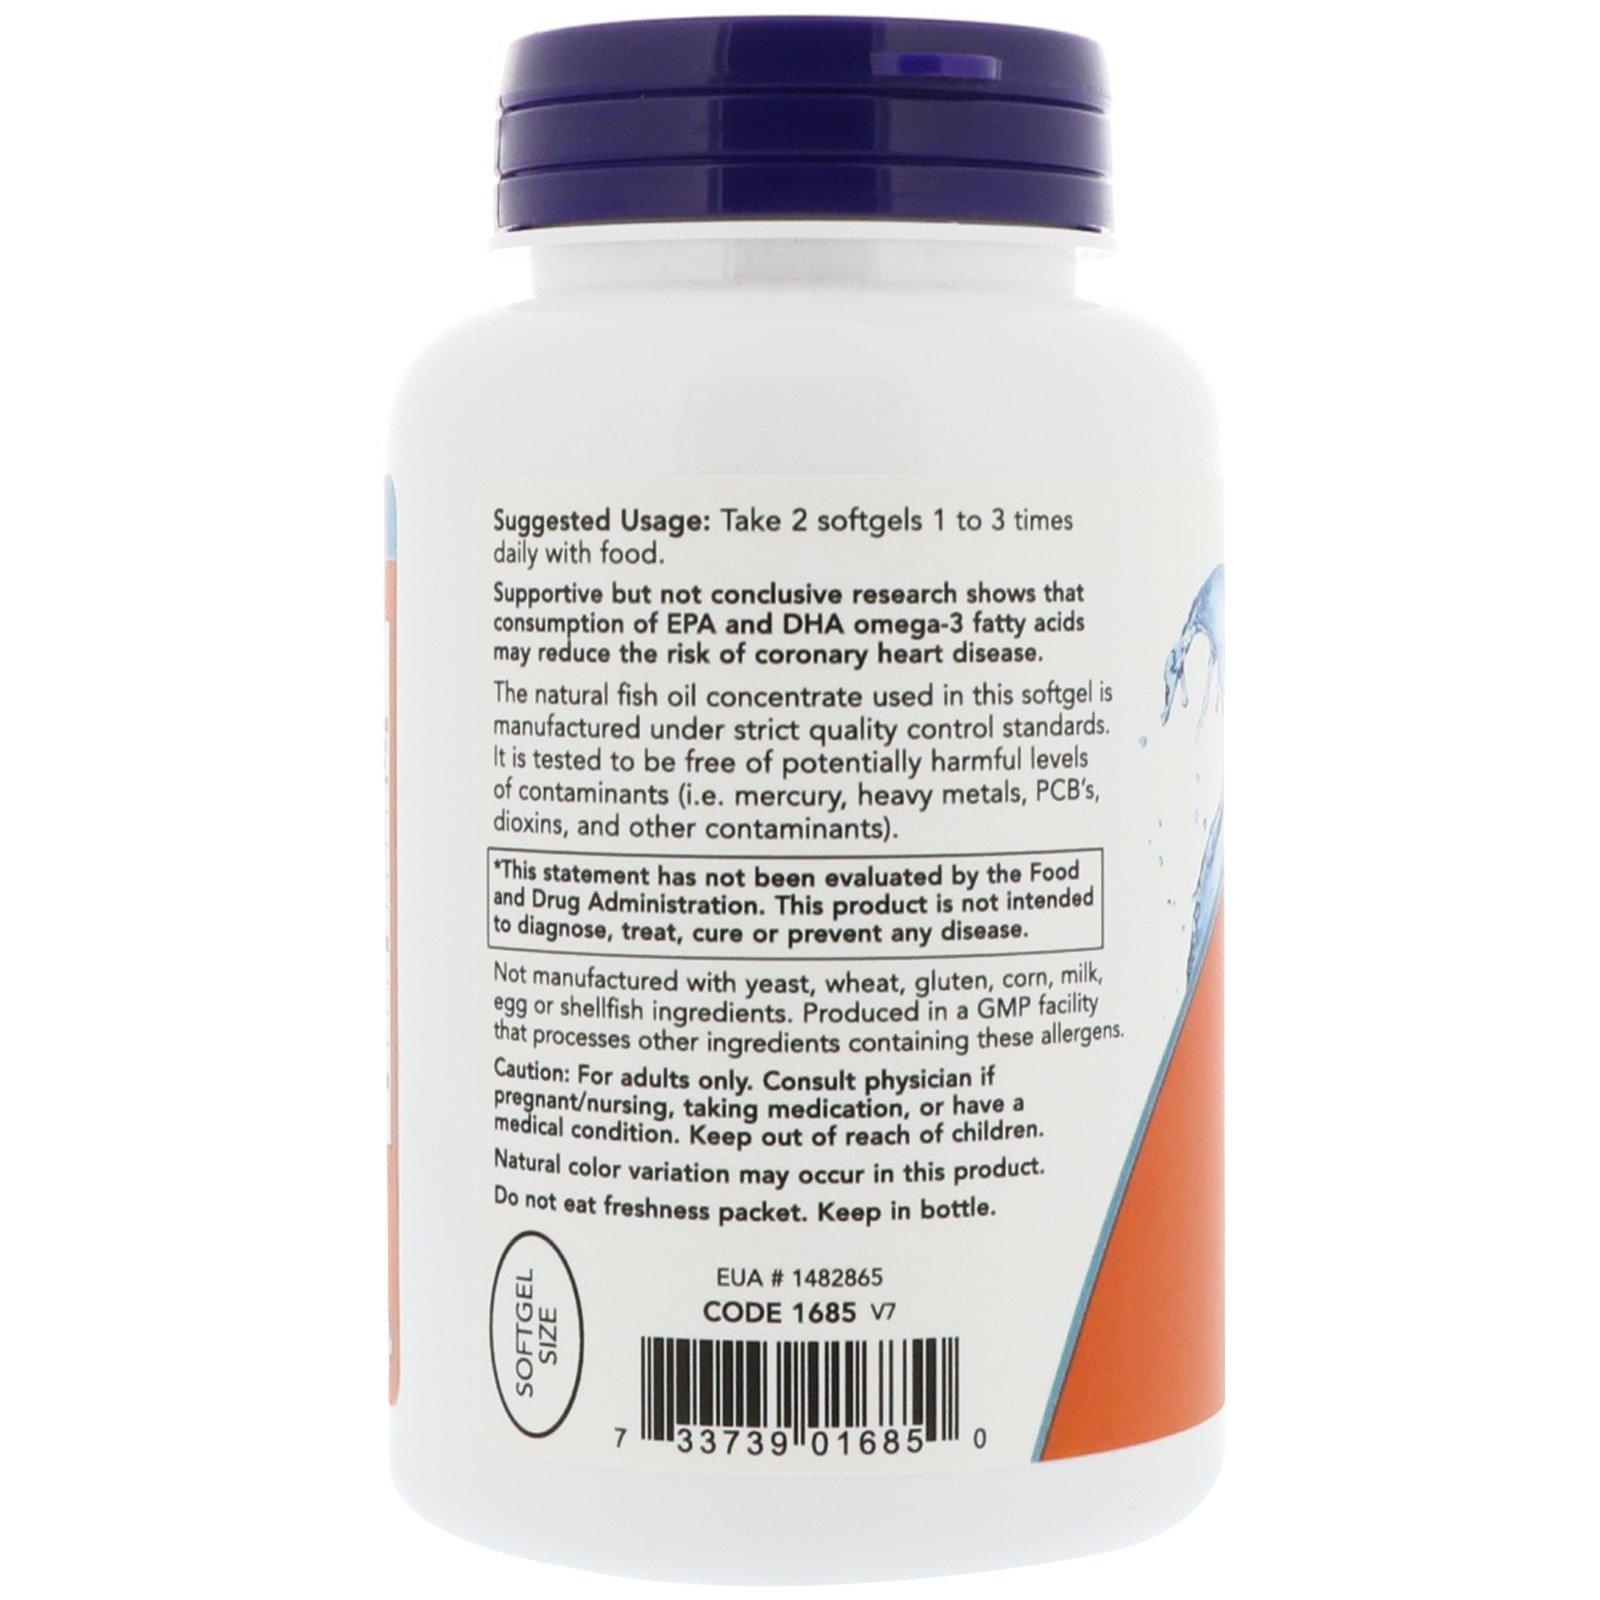 Omega-3 Mini, Омега-3 180EPA/120DHA Мини 500 мг - 180 капсул